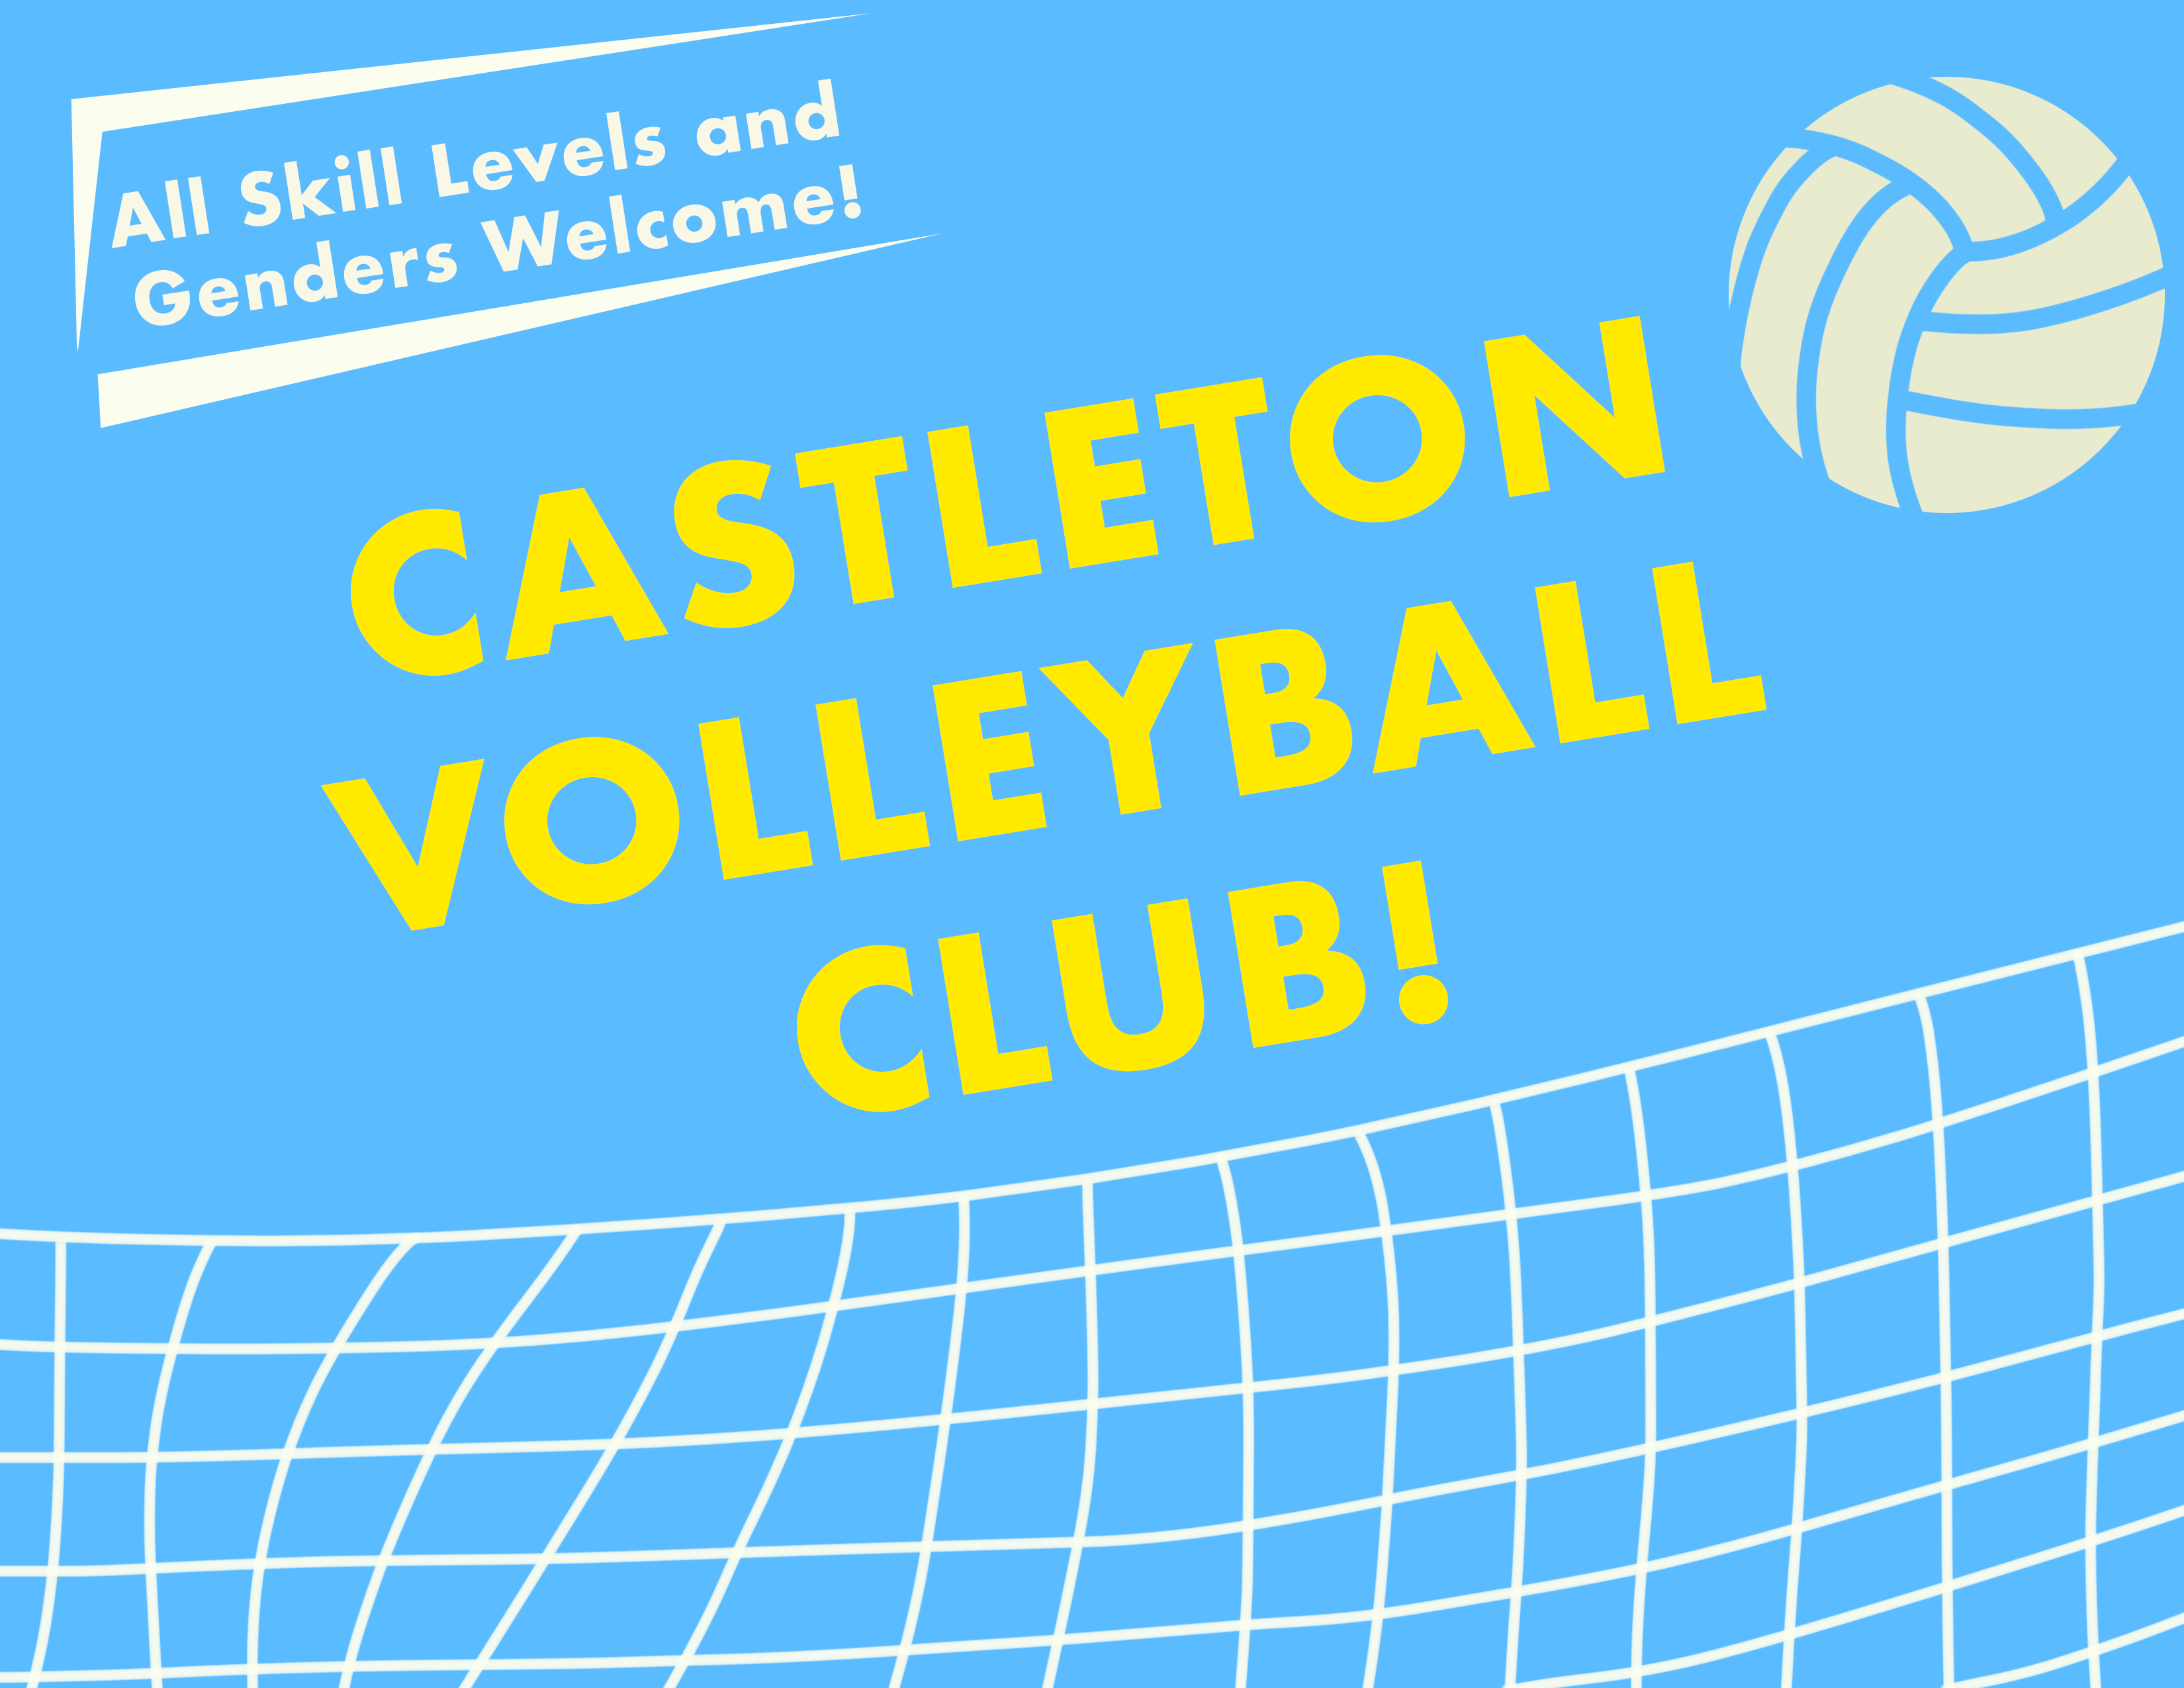 Castleton Volleyball Club!